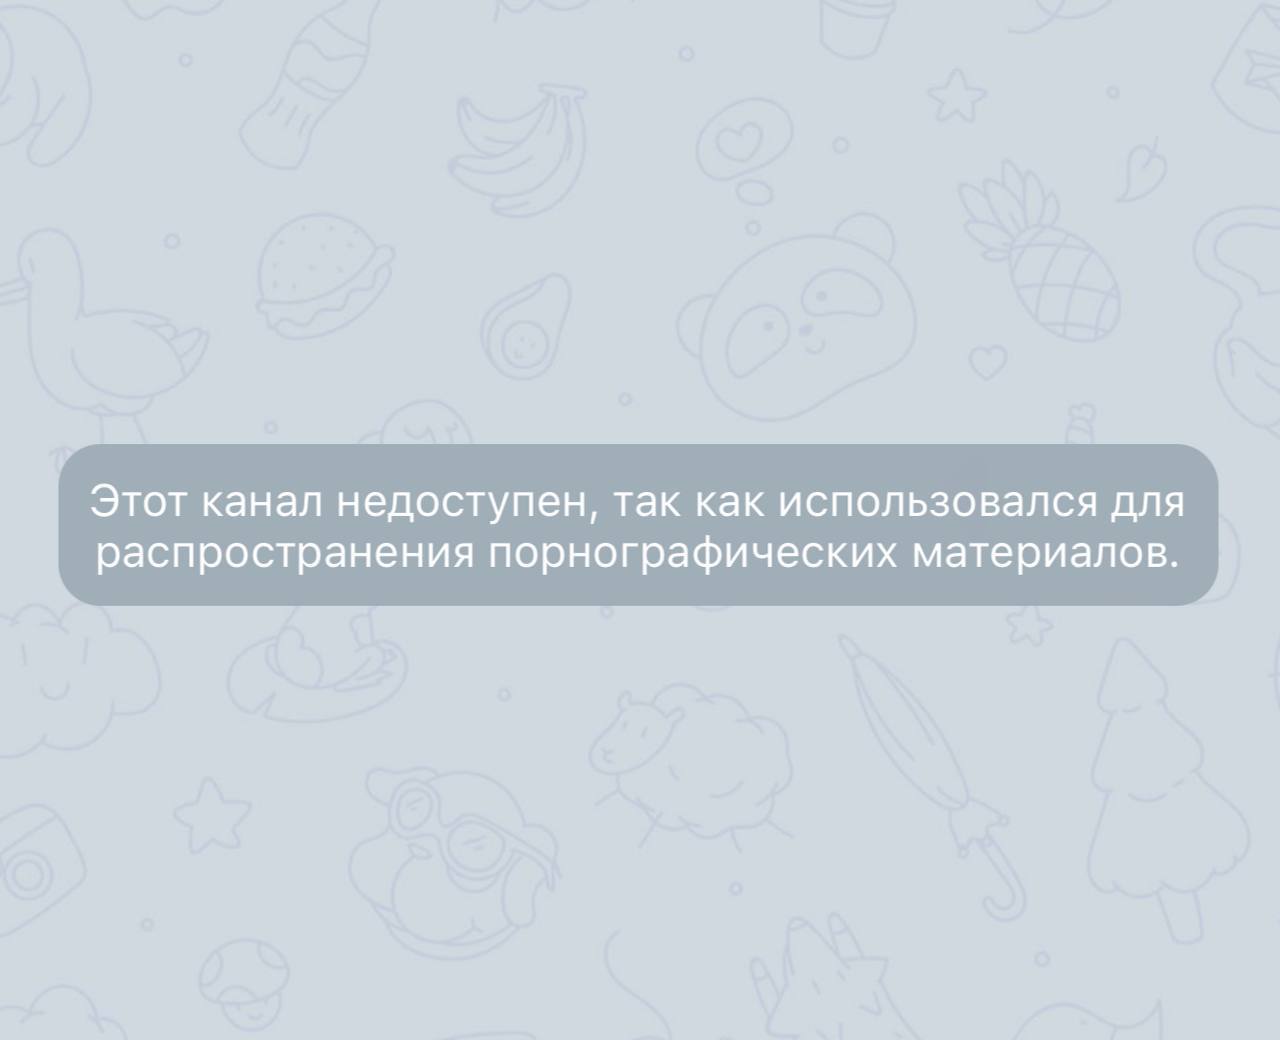 Как обойти блокировку телеграмма на андроид в казахстане фото 76